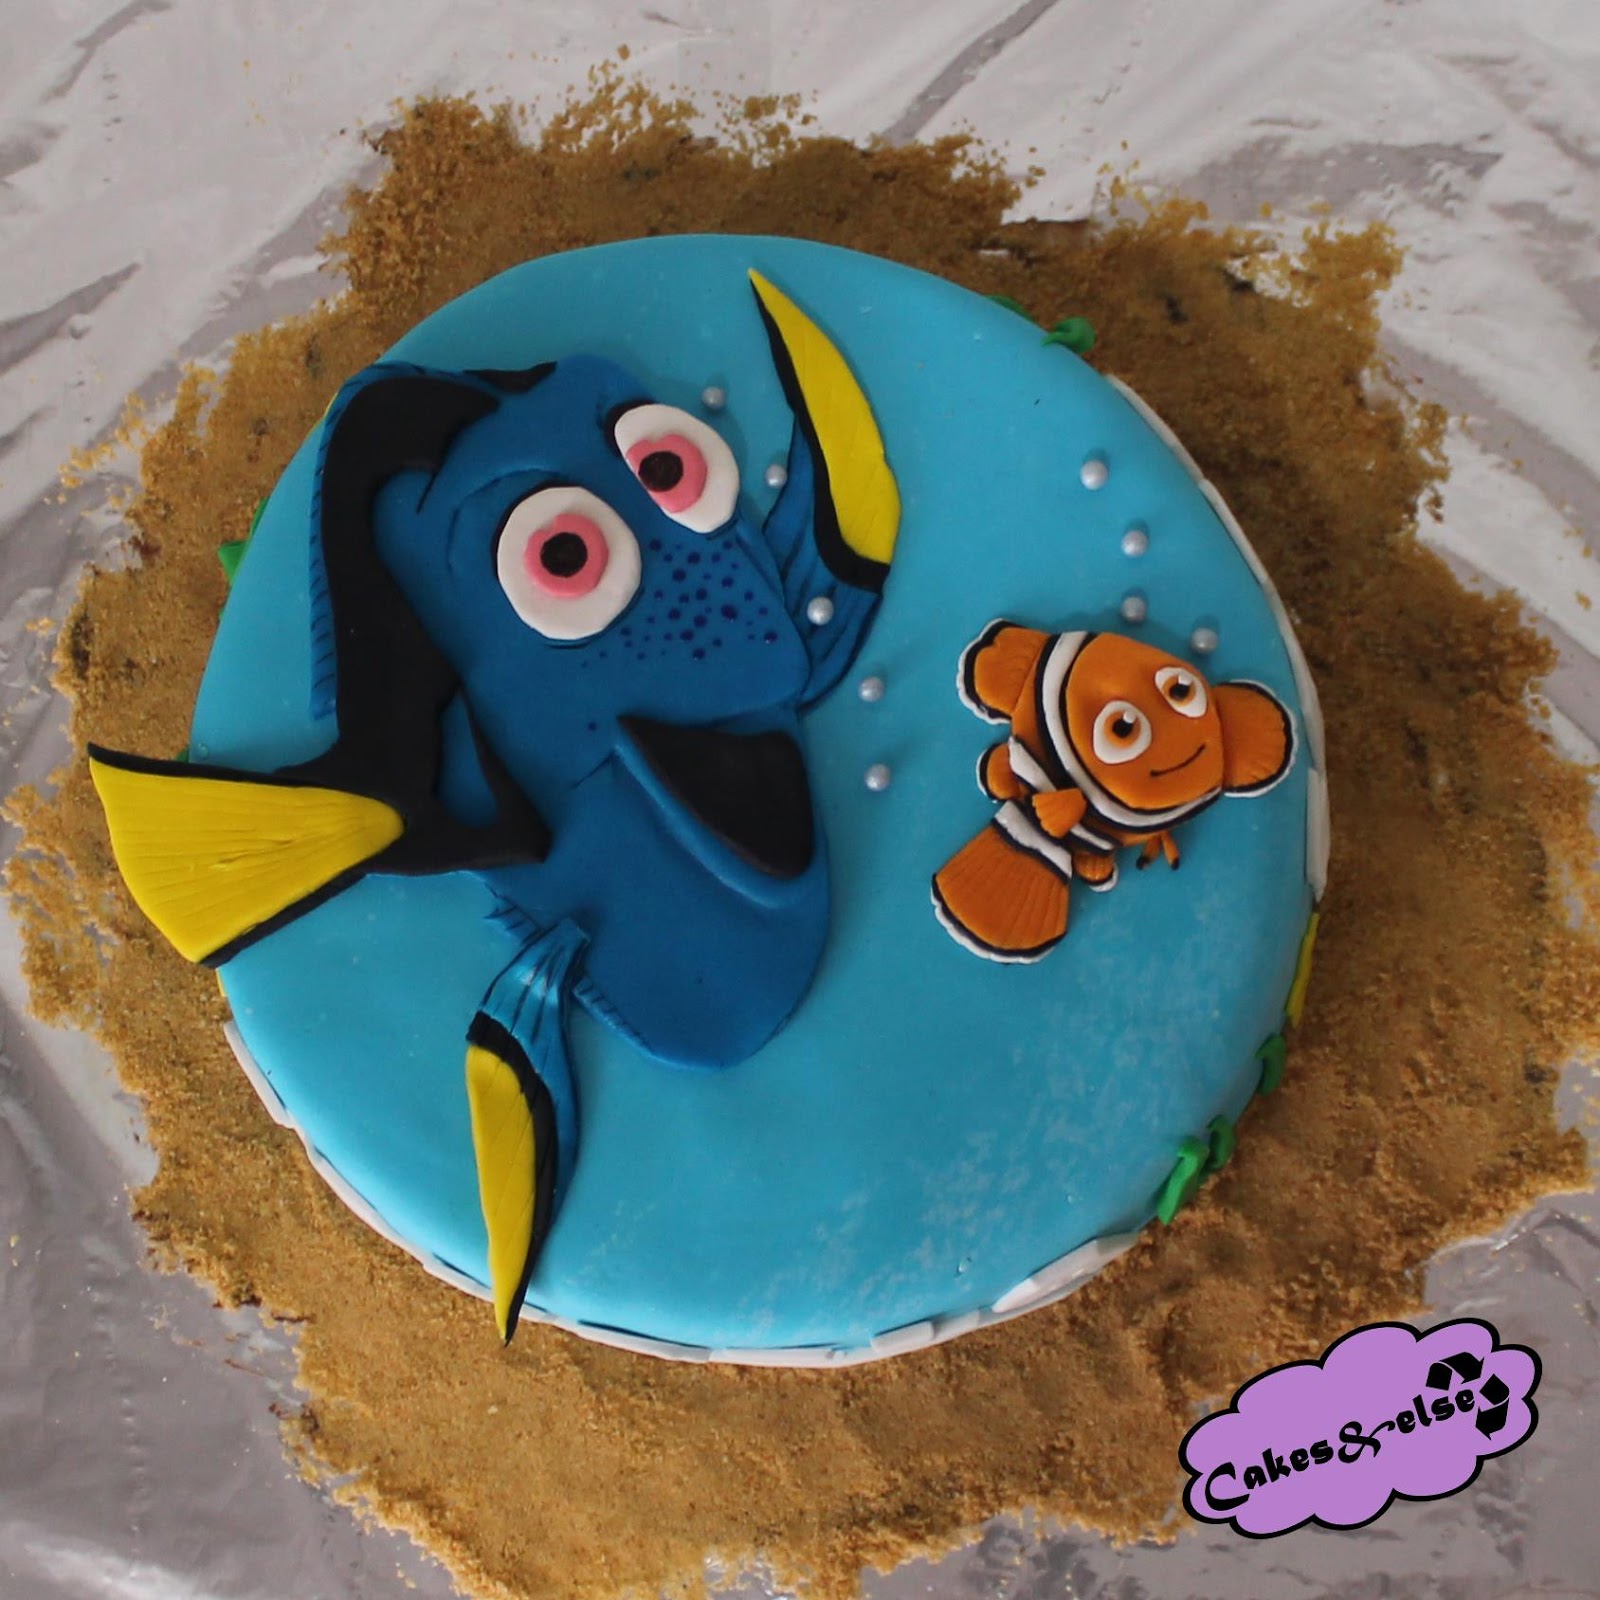 Cakes&else: Tarta buscando a Nemo (Finding Nemo cake)